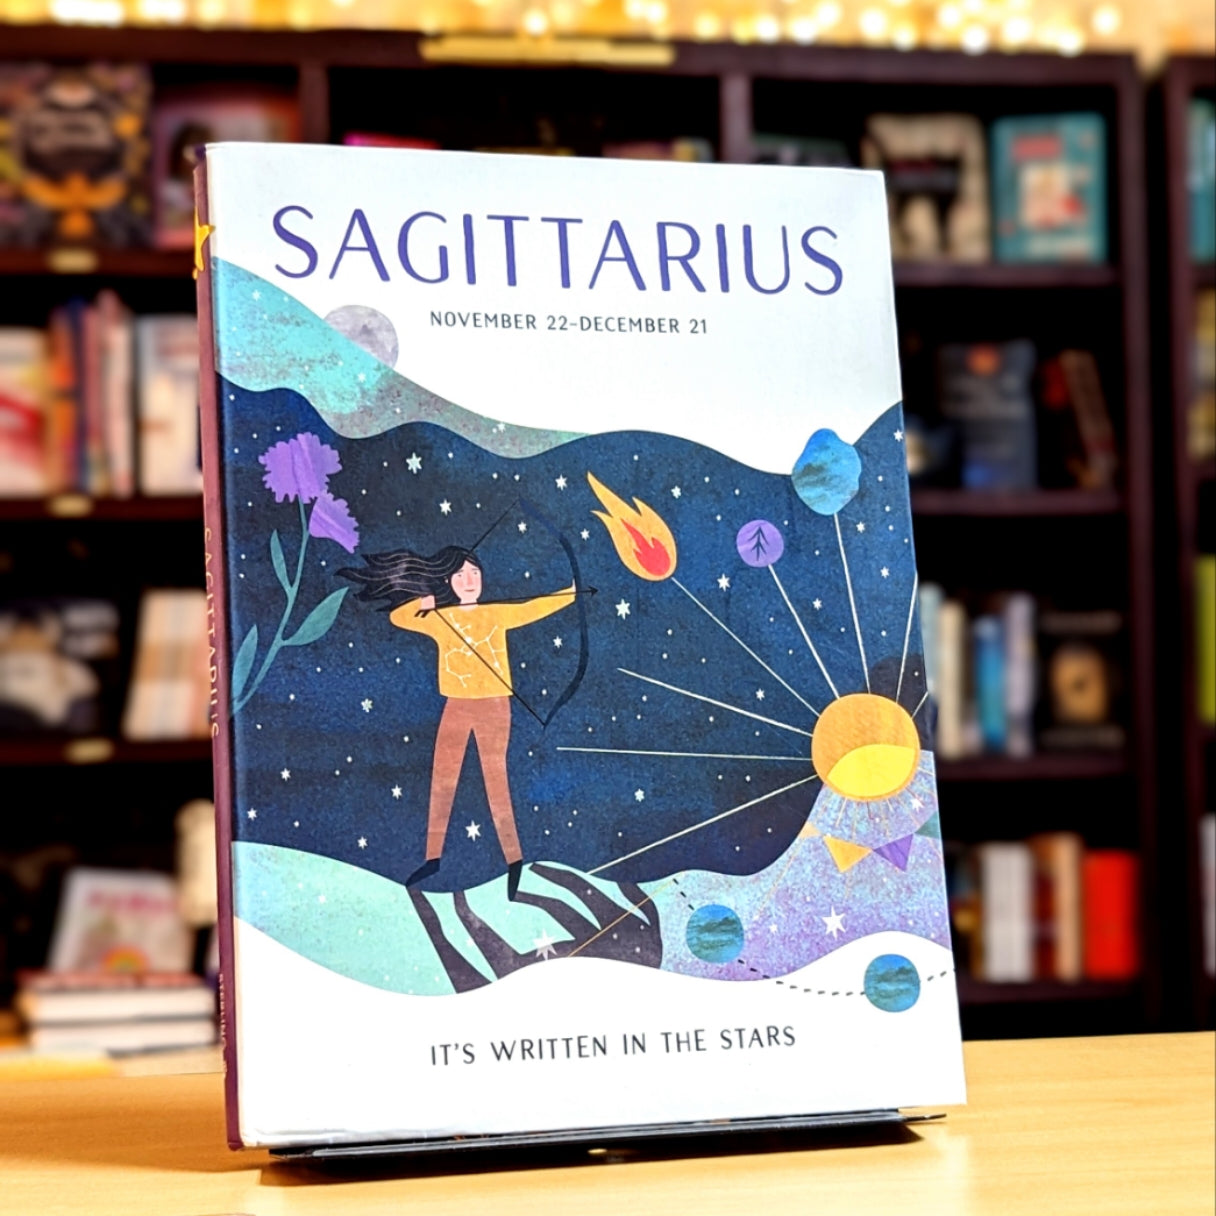 Sagittarius (Volume 9) (It's Written in the Stars)